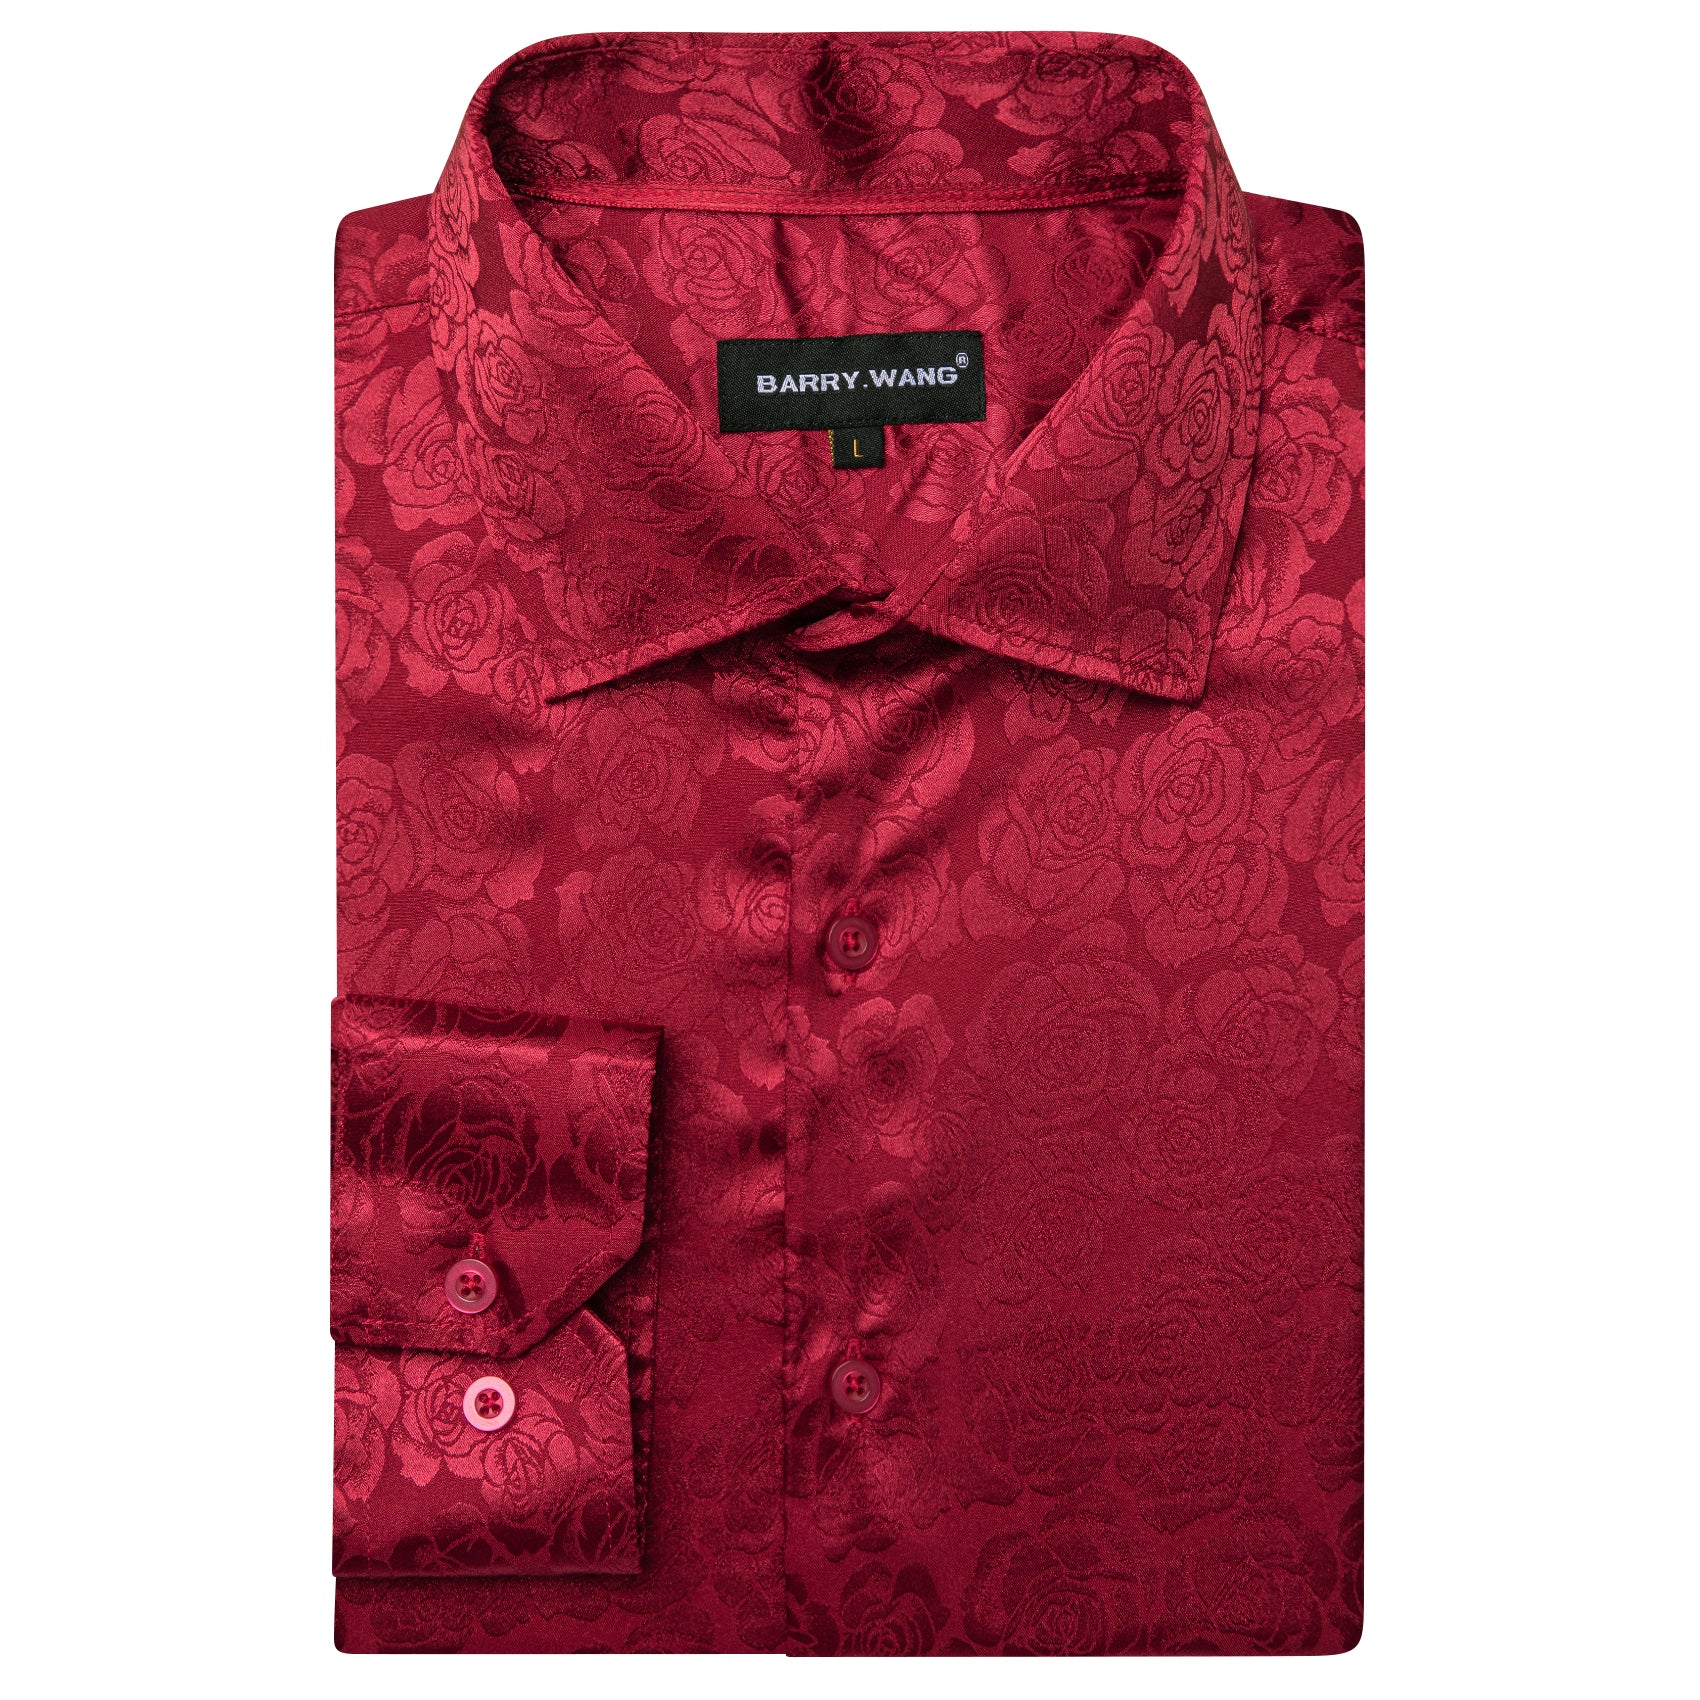 Barry.wang Dark Red Print Flower Silk Men's Shirt